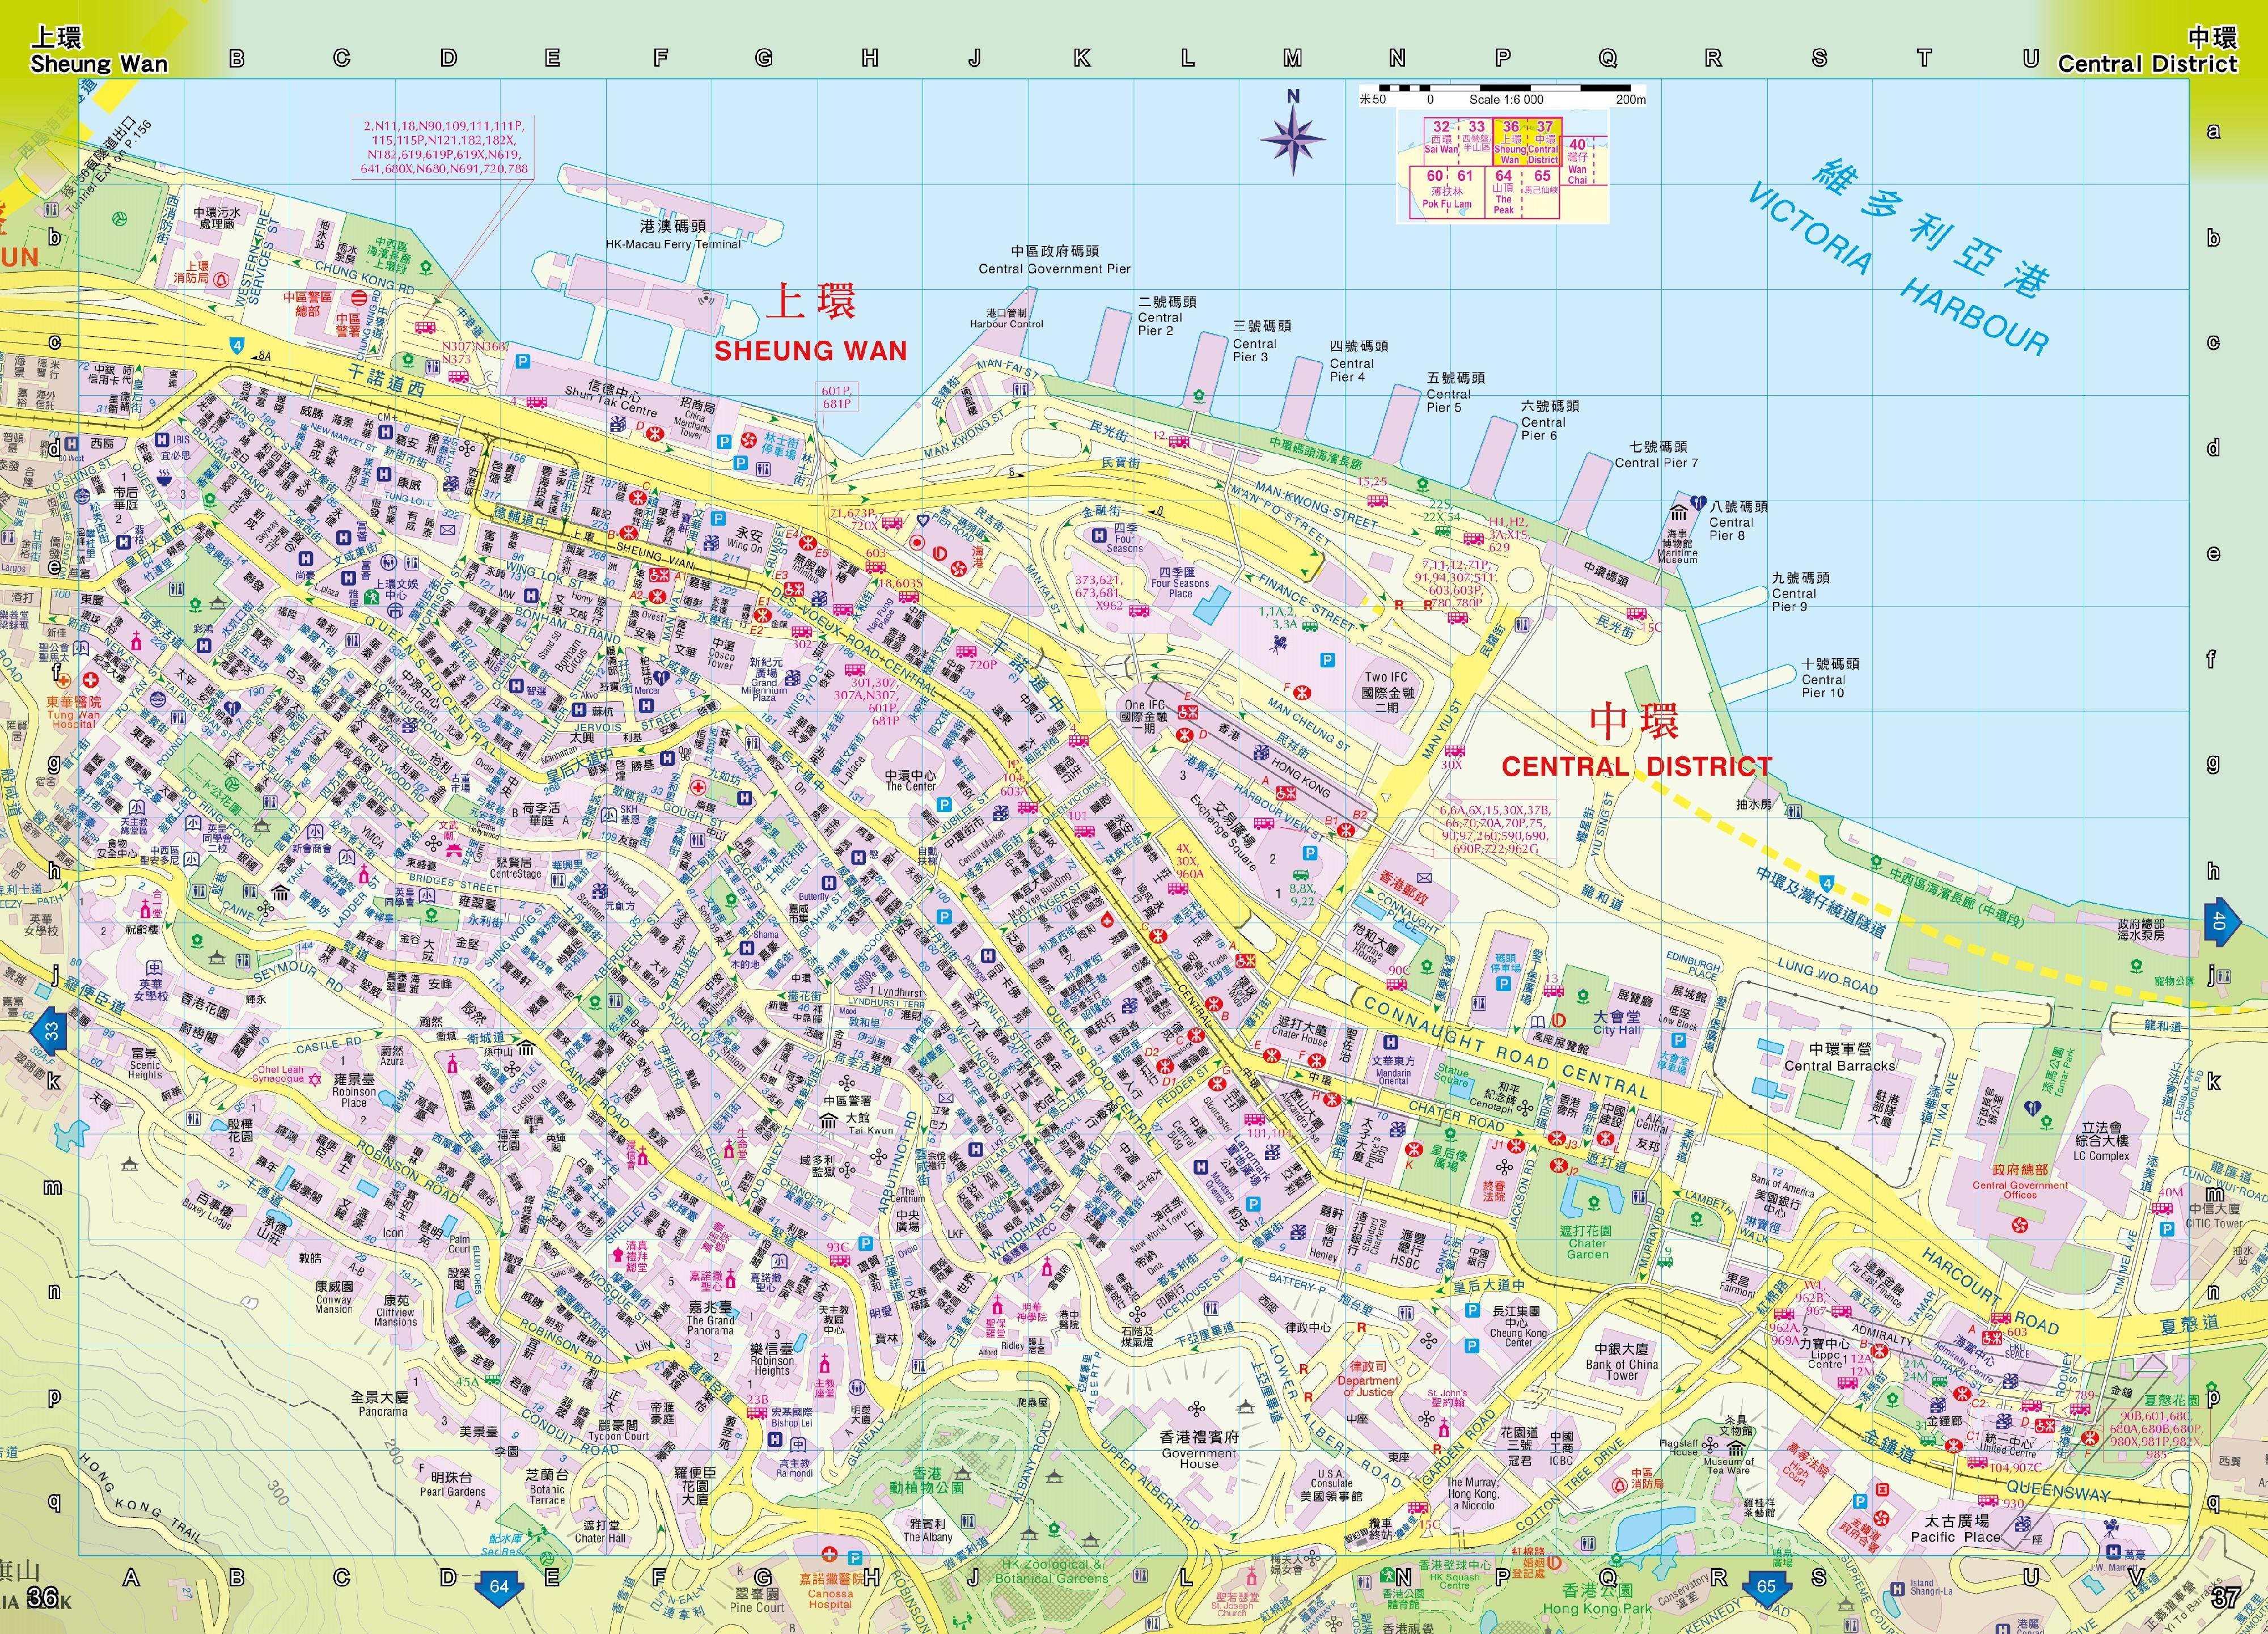 二○二二年影像地圖版《香港街》今日（一月二十五日）起公開發售。新版《香港街》載有詳盡的香港地圖。圖示載有中環及上環地理資訊的頁面。